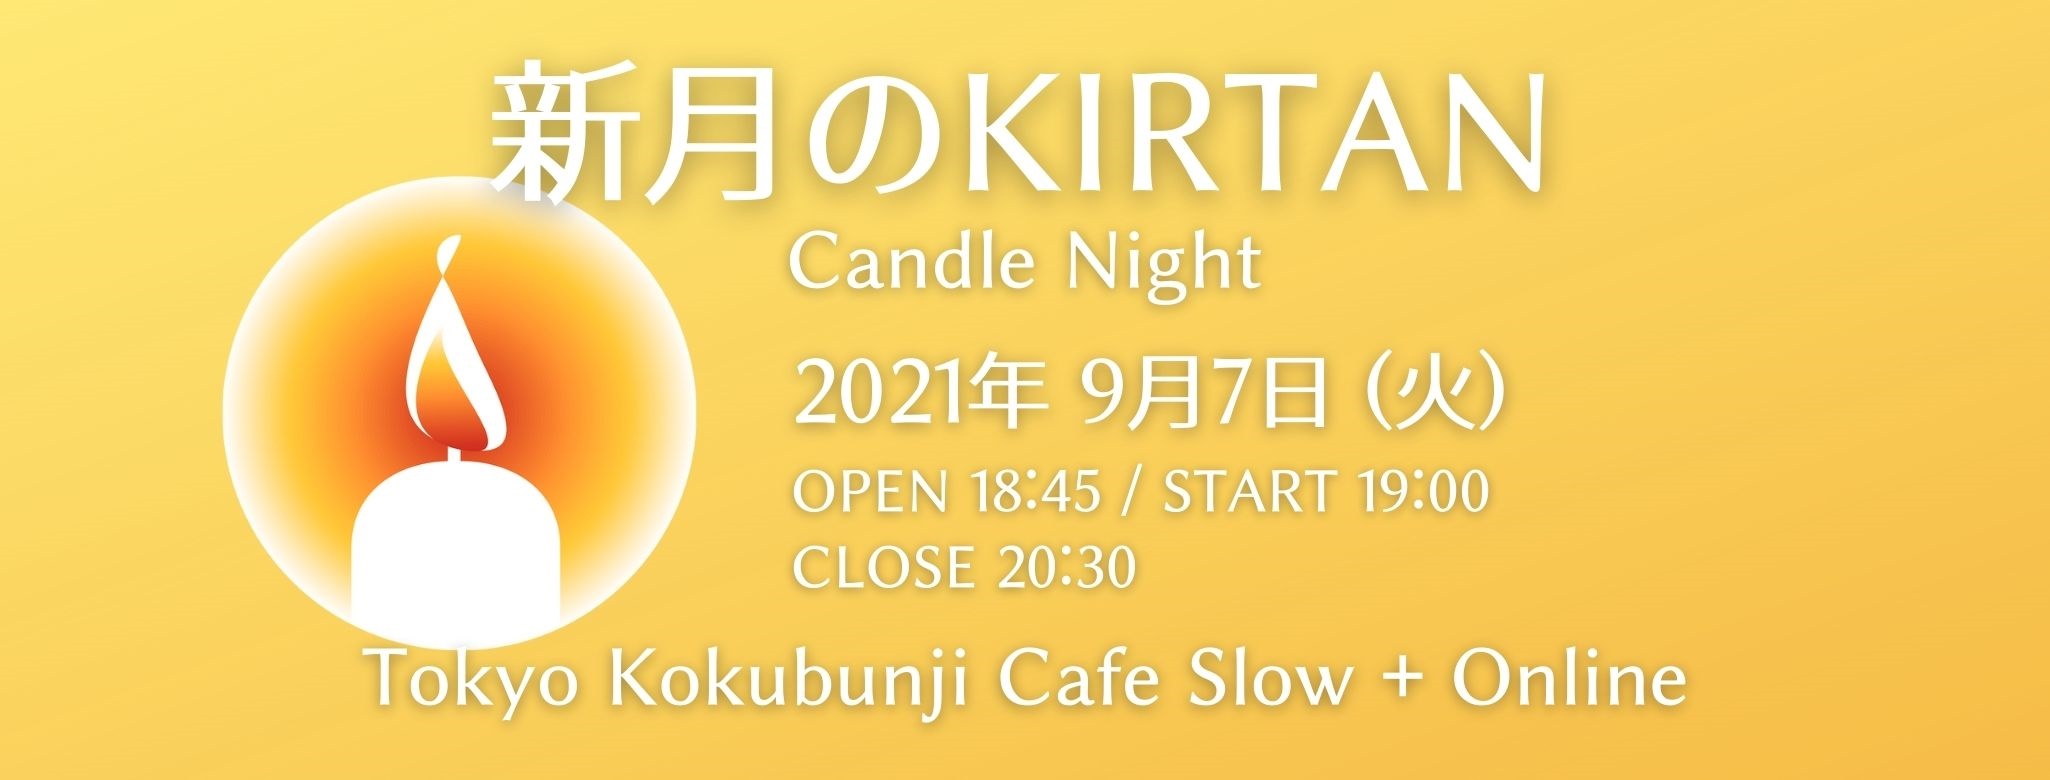 9/7(火) 新月のKIRTAN Candle Night @CafeSlow&Online with 堀田義樹